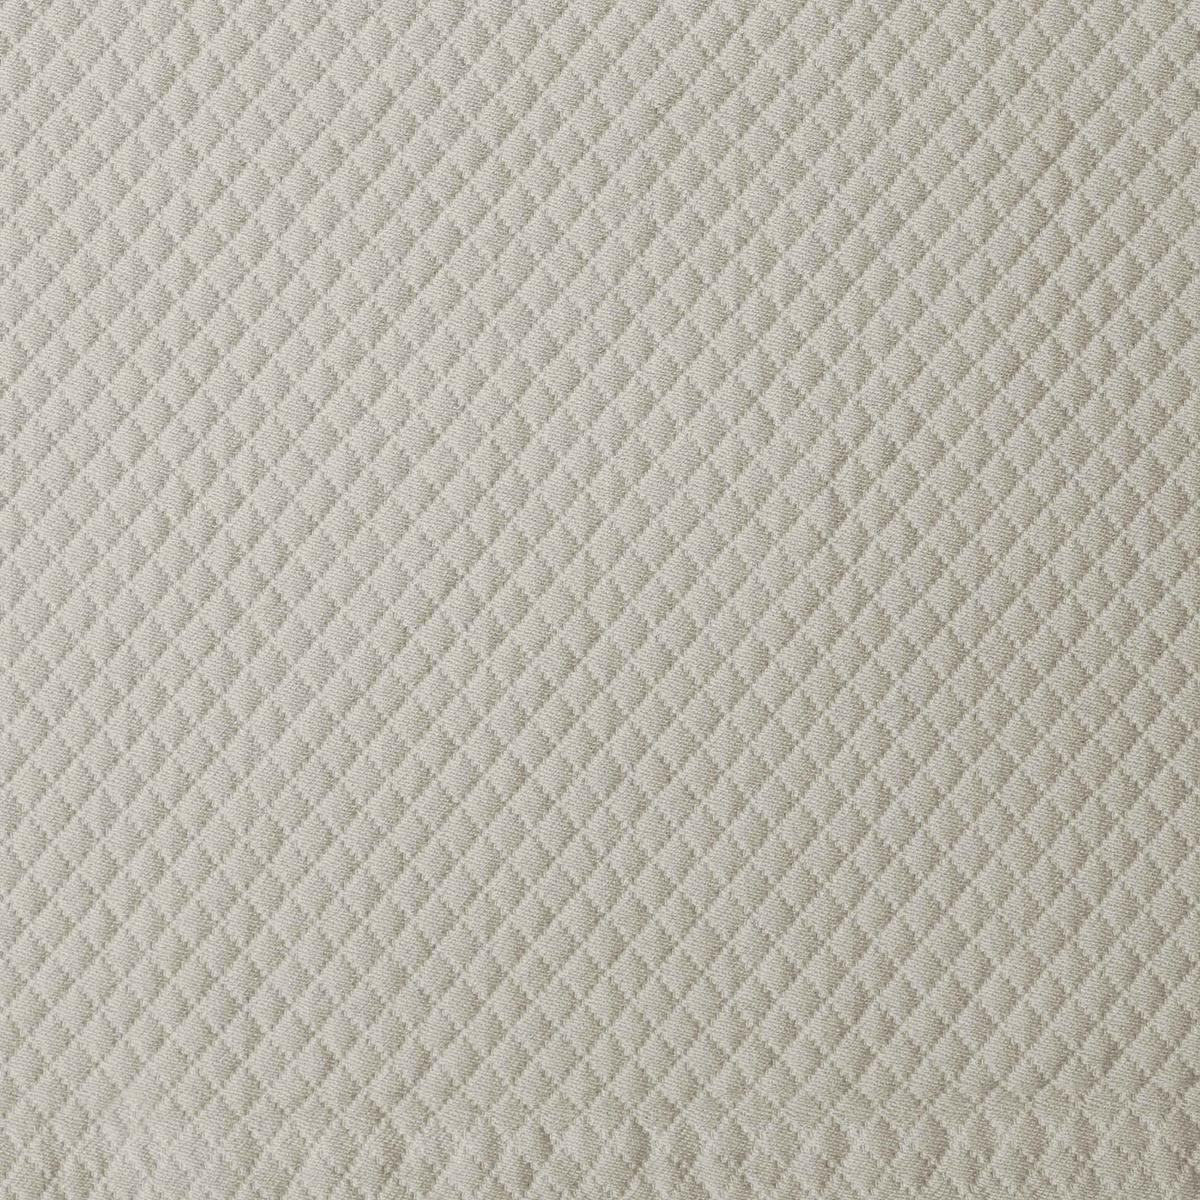 Fabric Closeup of Beige Signoria Olivia Coverlet &amp; Sham